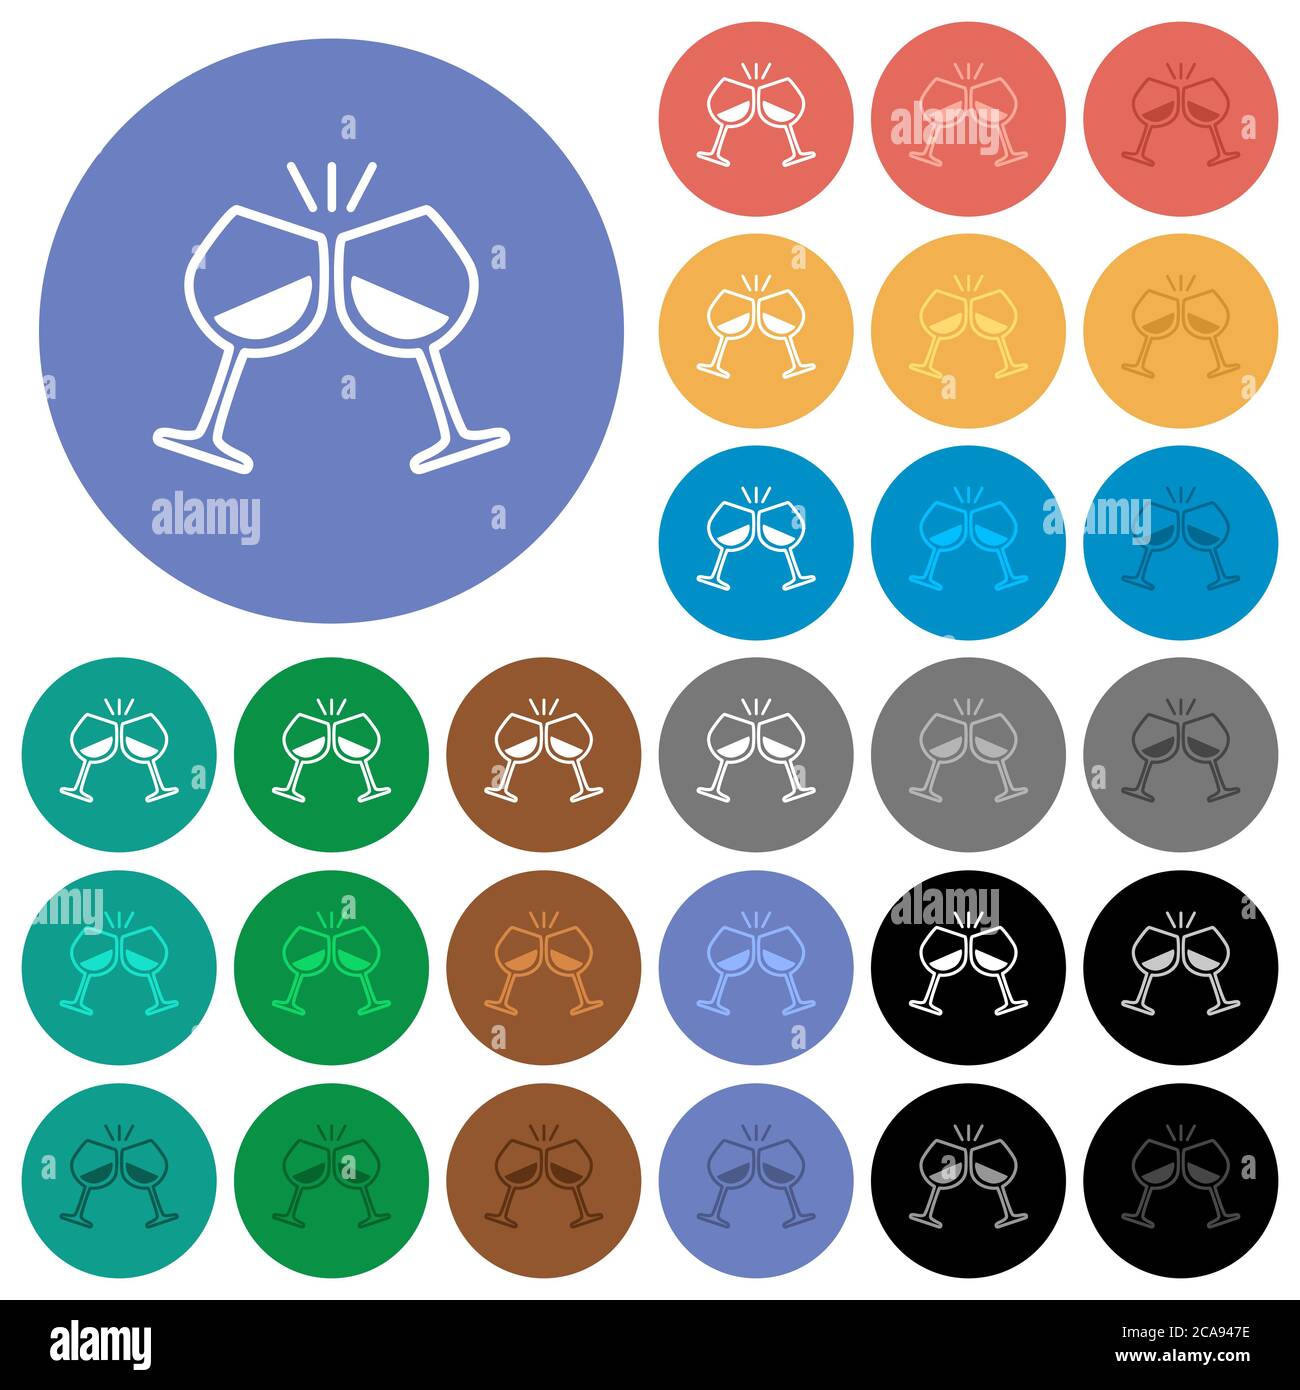 Toasten mit Wein mehrfarbige flache Symbole auf runden Hintergründen. Inklusive weißer, heller und dunkler Symbolvarianten für Hover- und aktive Statuseffekte, Stock Vektor